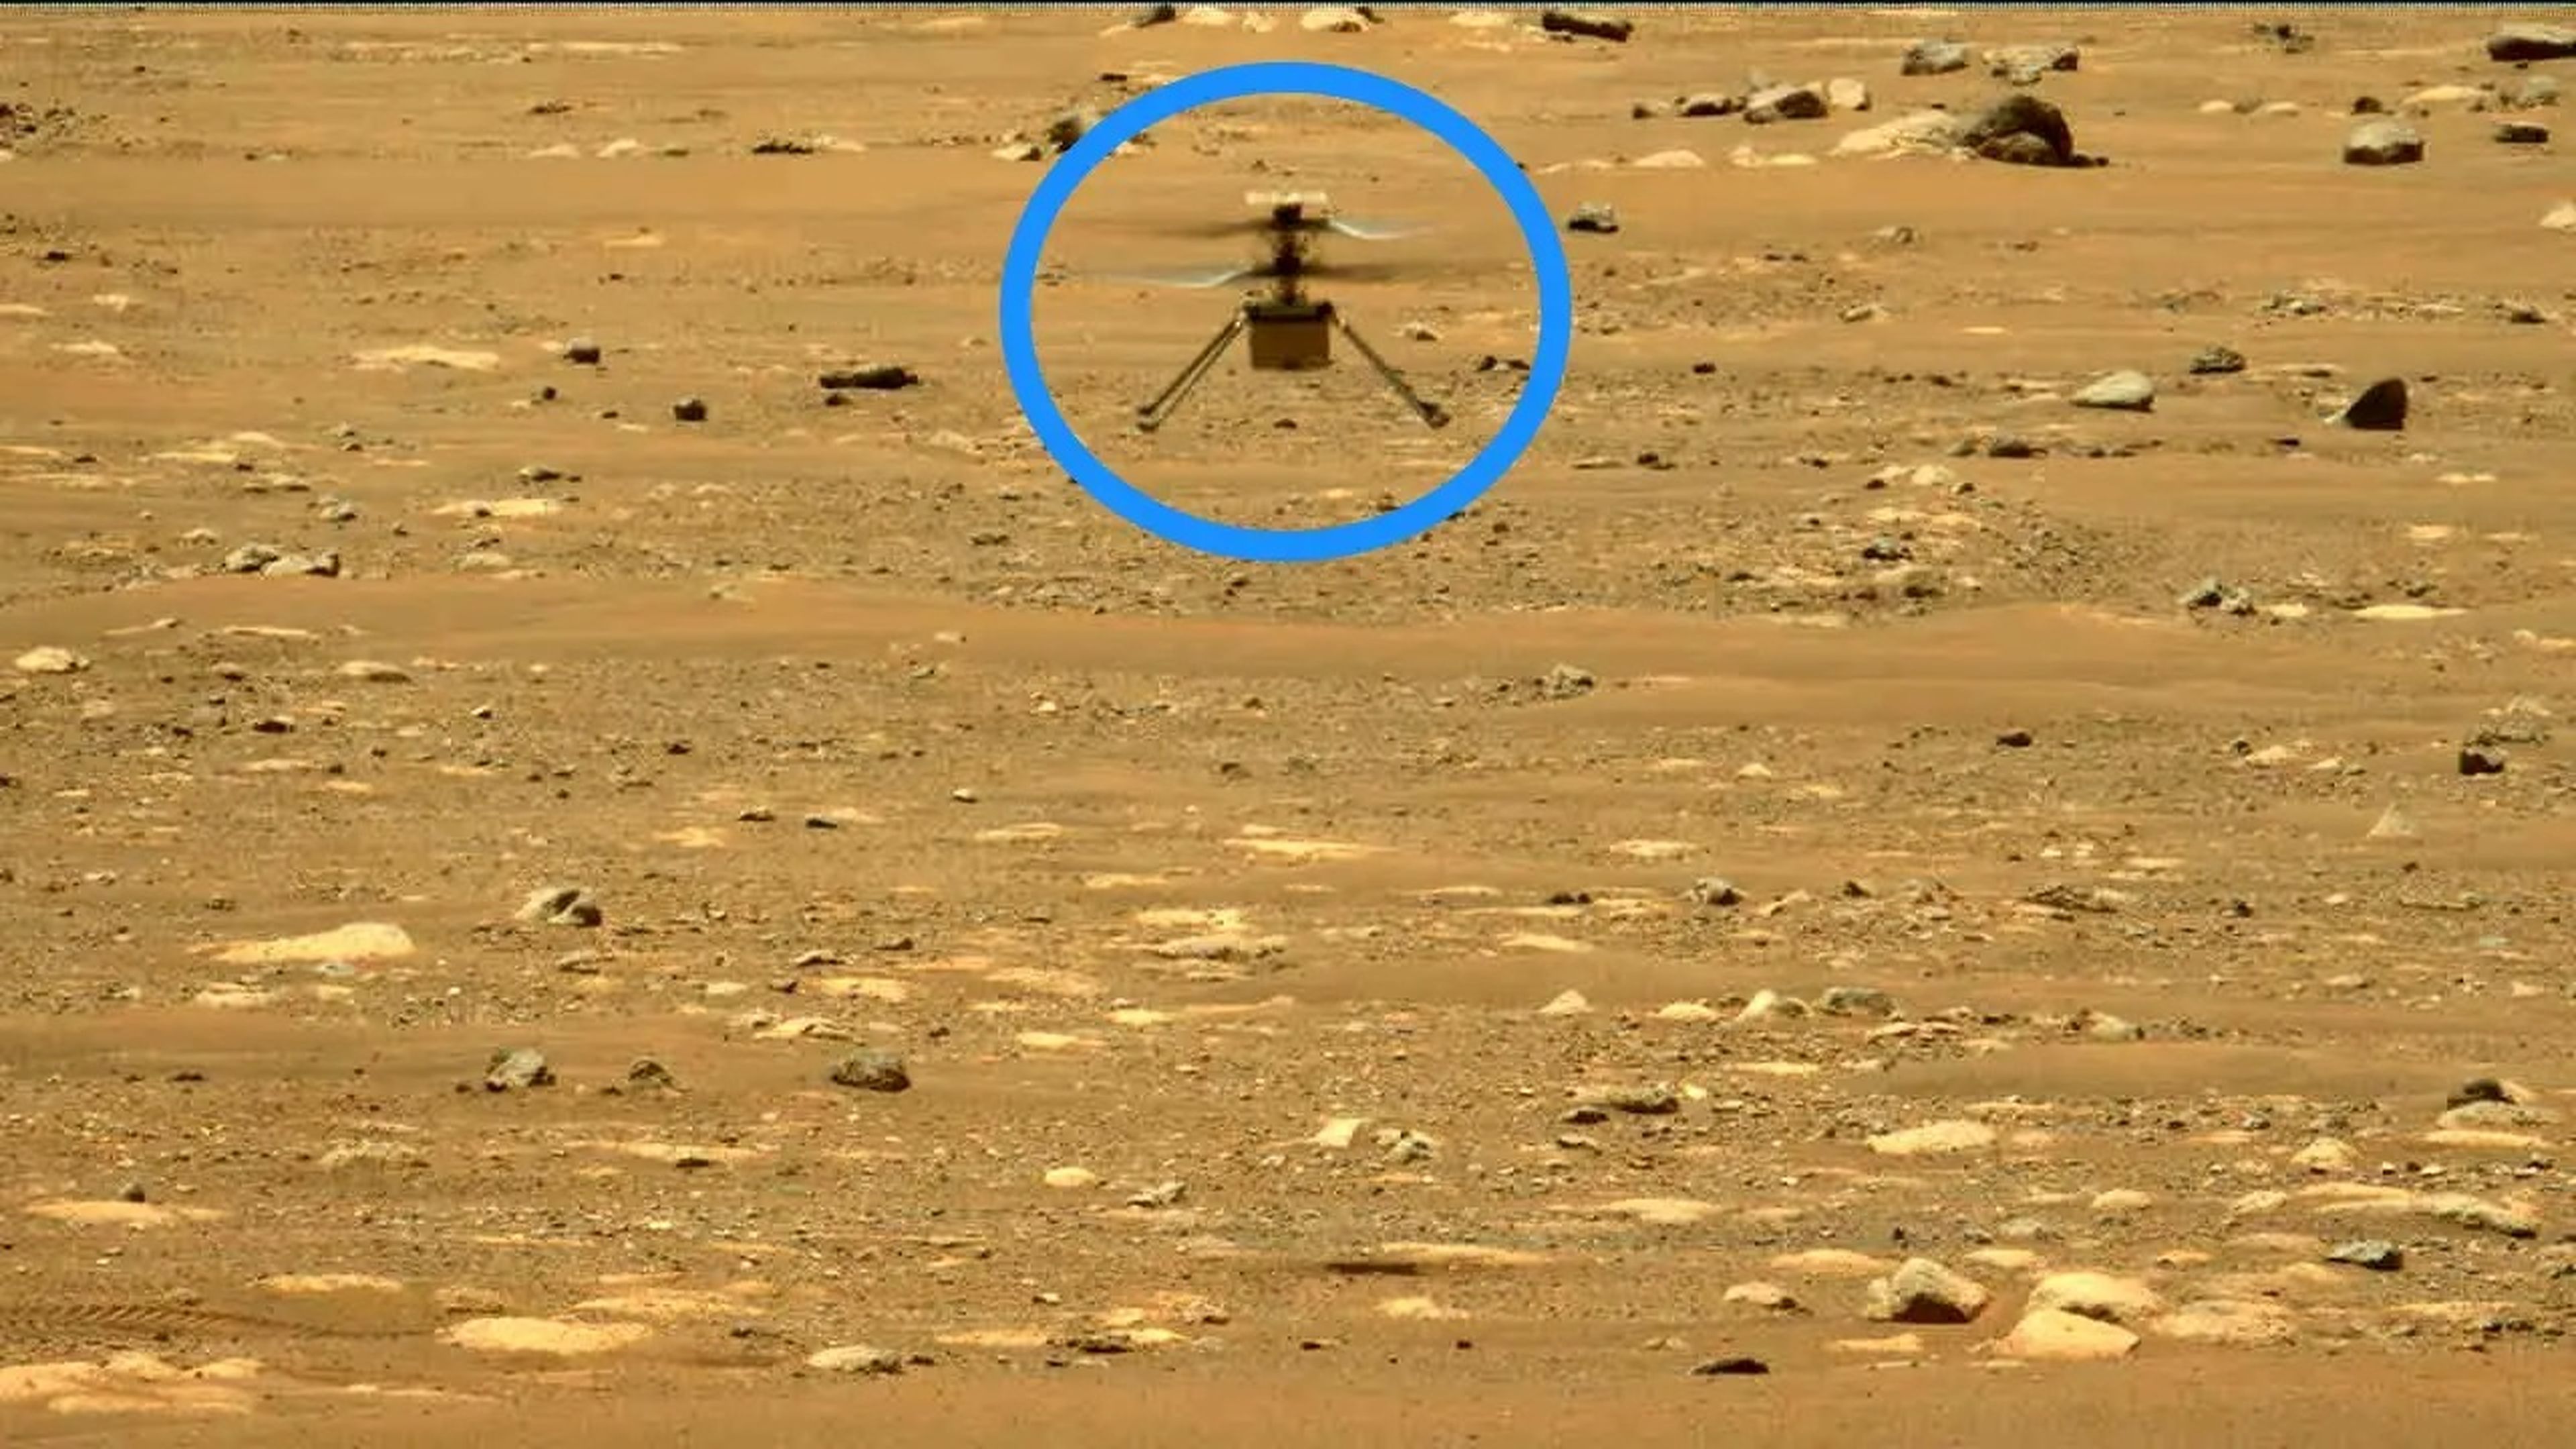 El rover Perseverance capturó una foto de Ingenuity en el aire durante su segundo vuelo el 22 de abril de 2021.